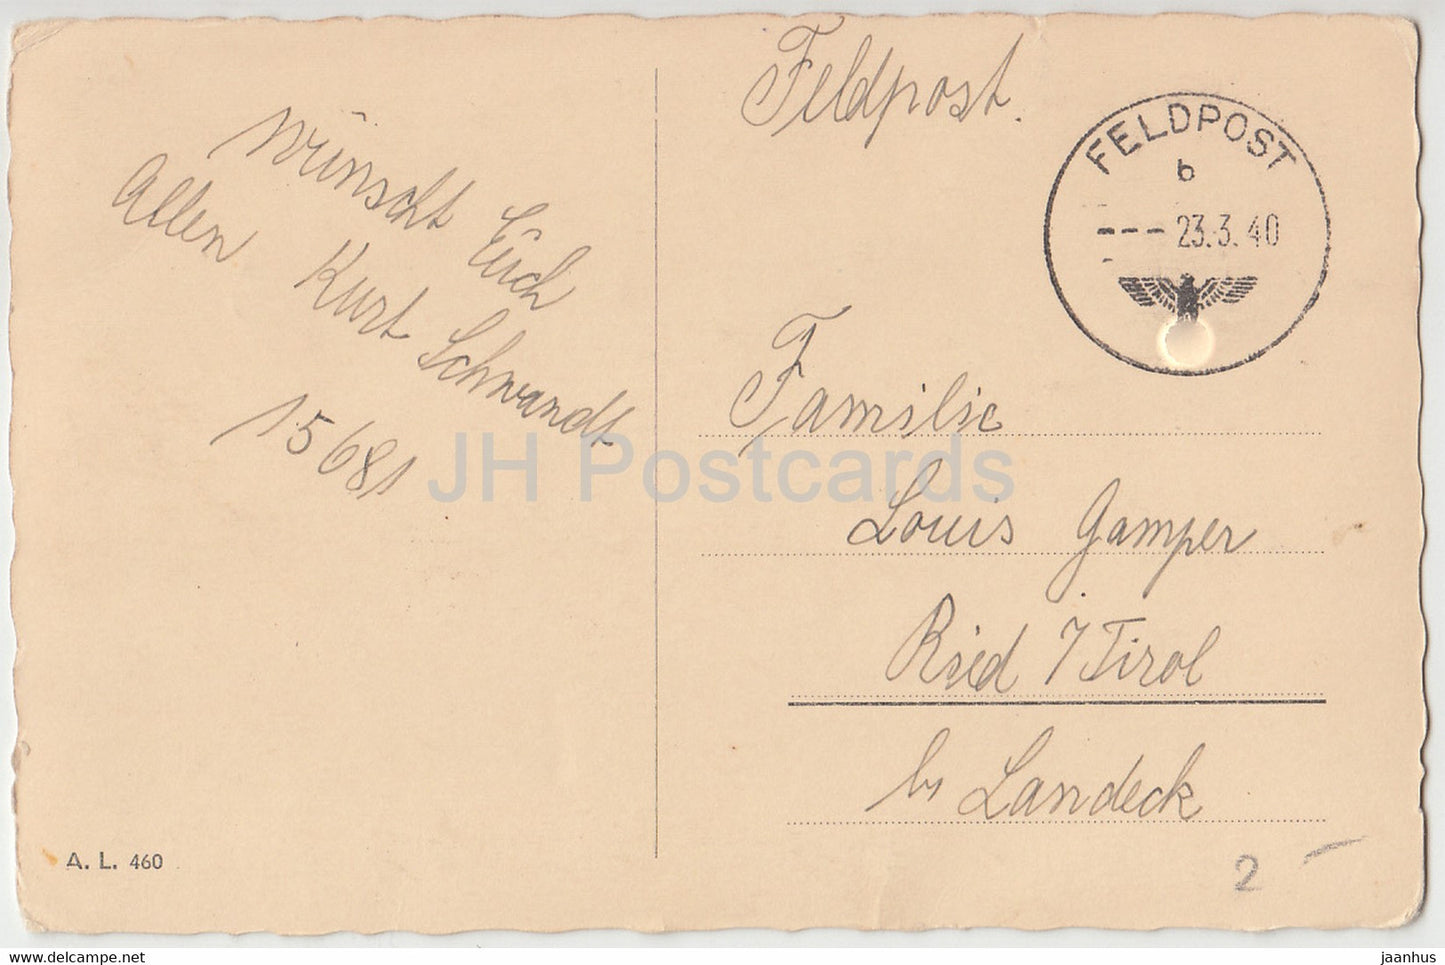 Ostergrußkarte - Frohe Ostern - Ei - Entlein - Glocke - AL 460 - Feldpost - alte Postkarte - 1940 - Deutschland - gebraucht